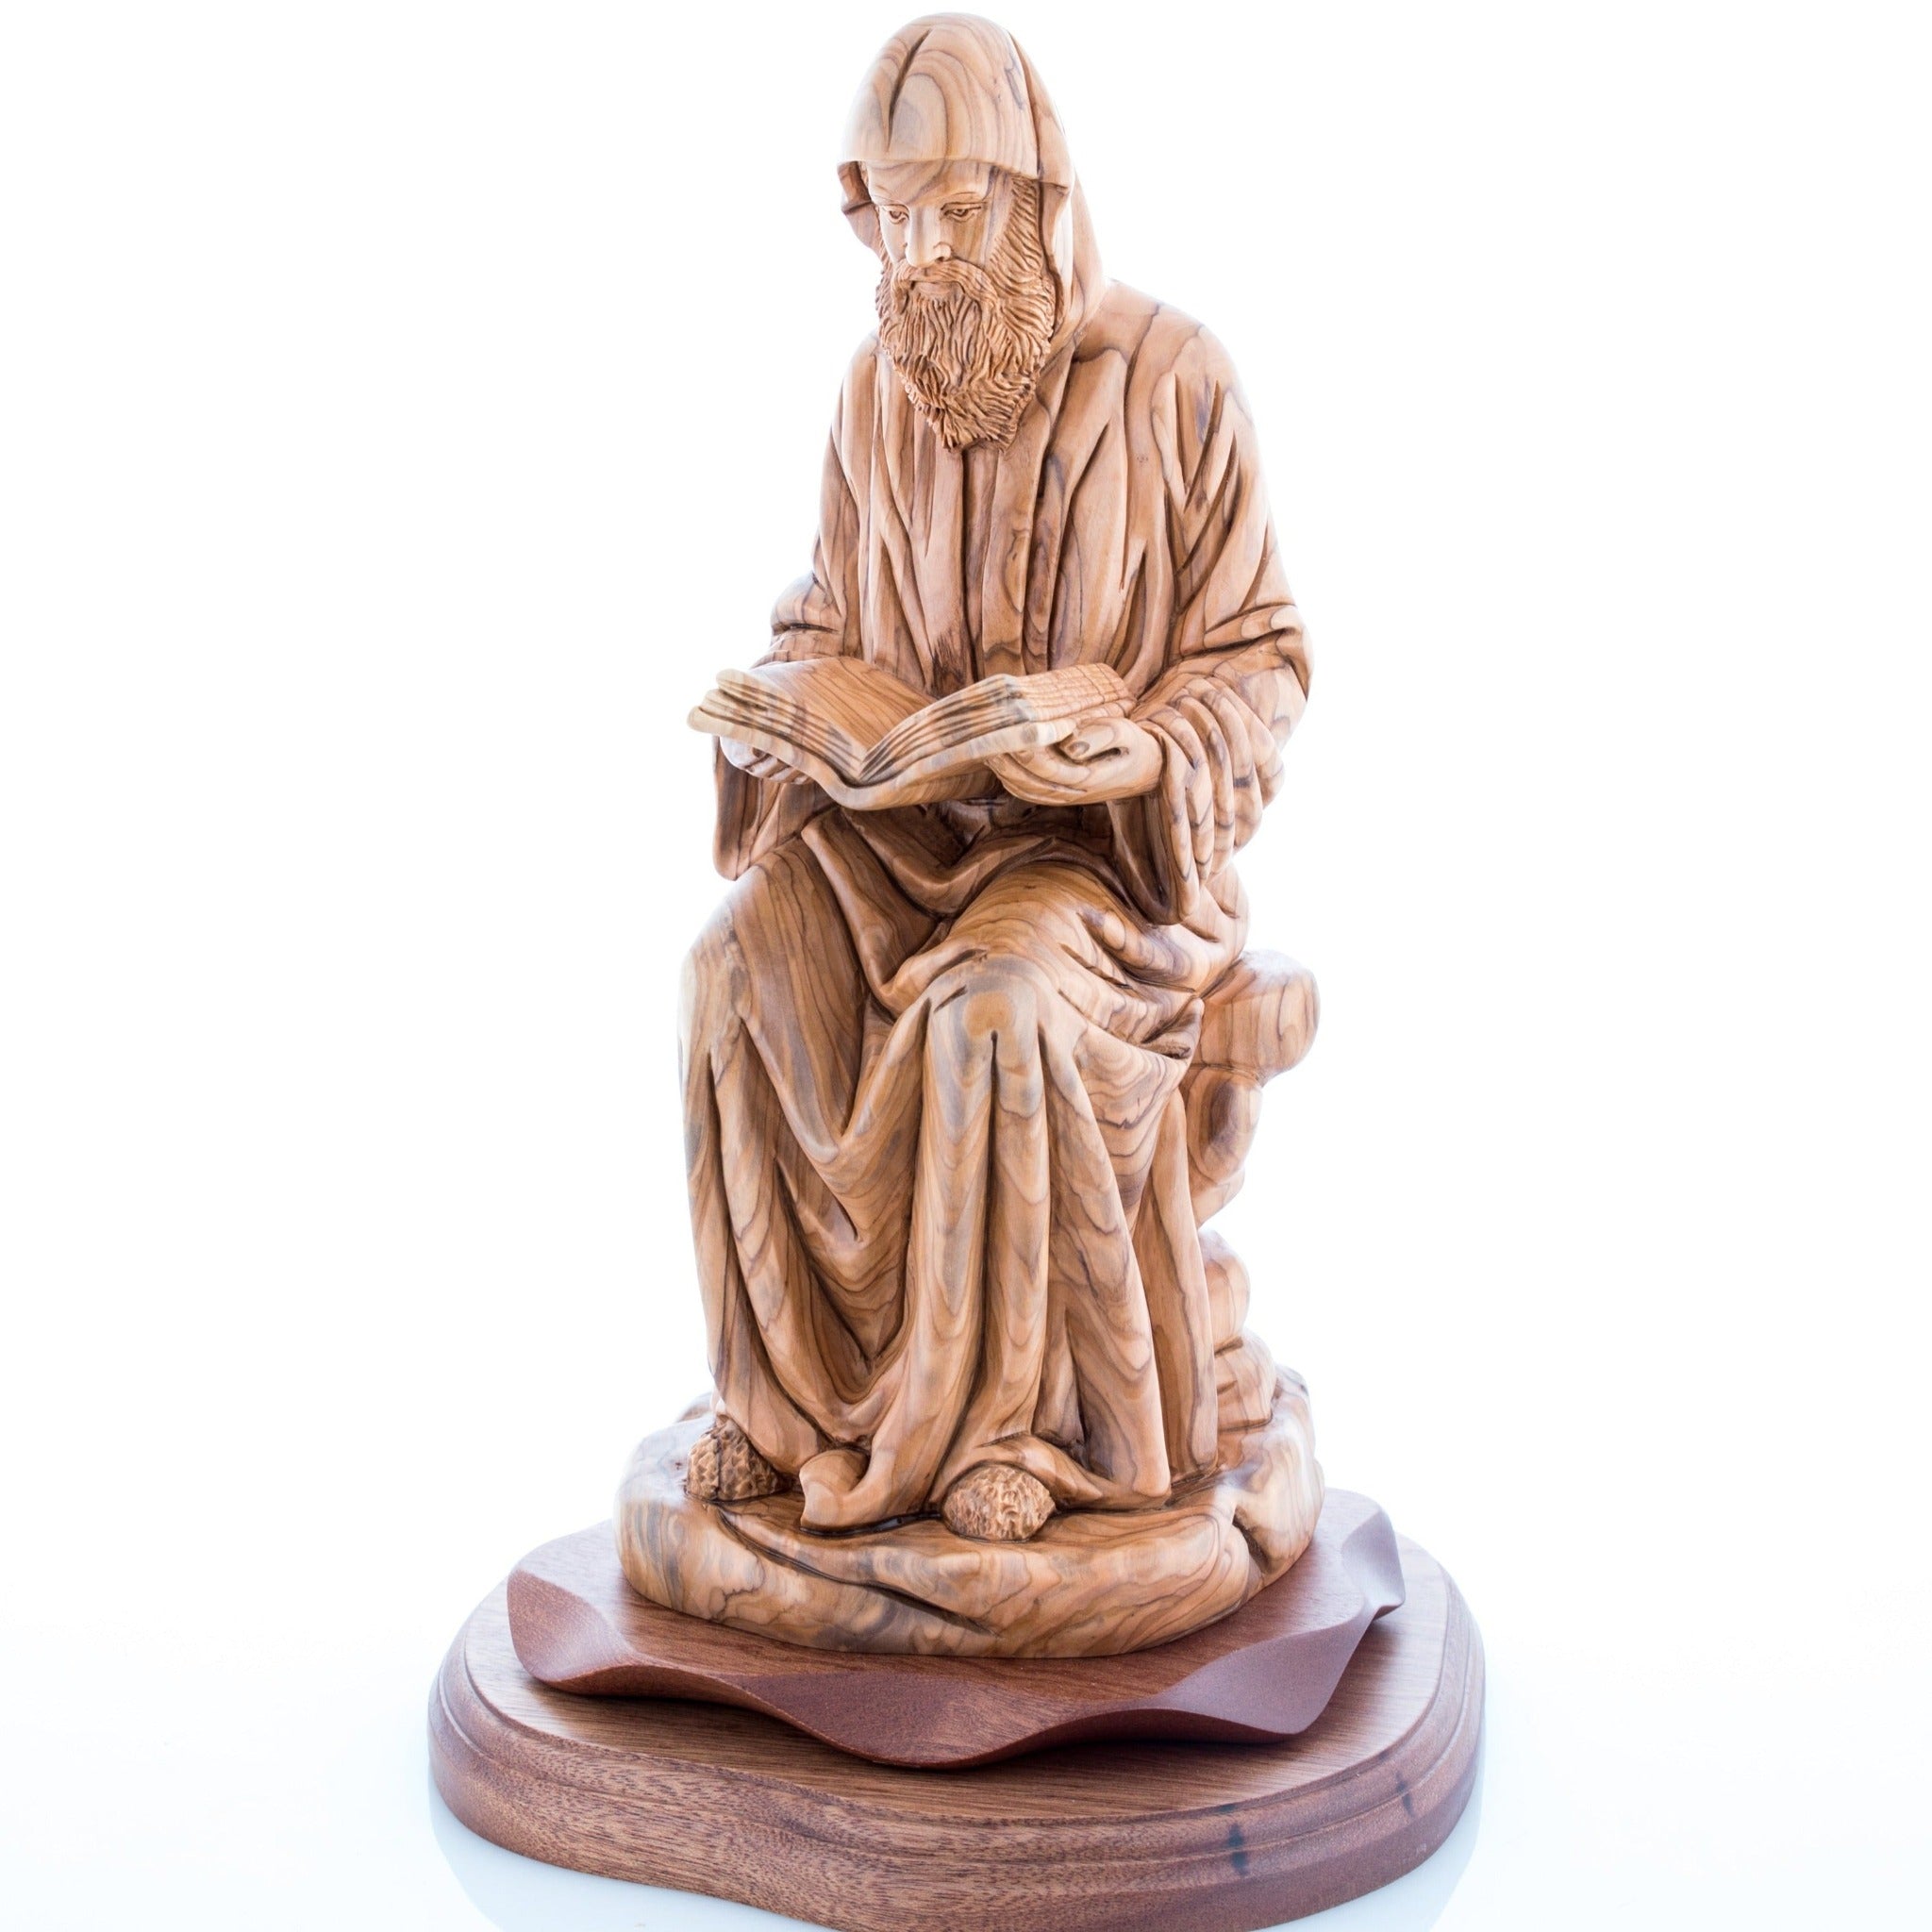 St. Charbel Carved Wooden Sculpture, 13